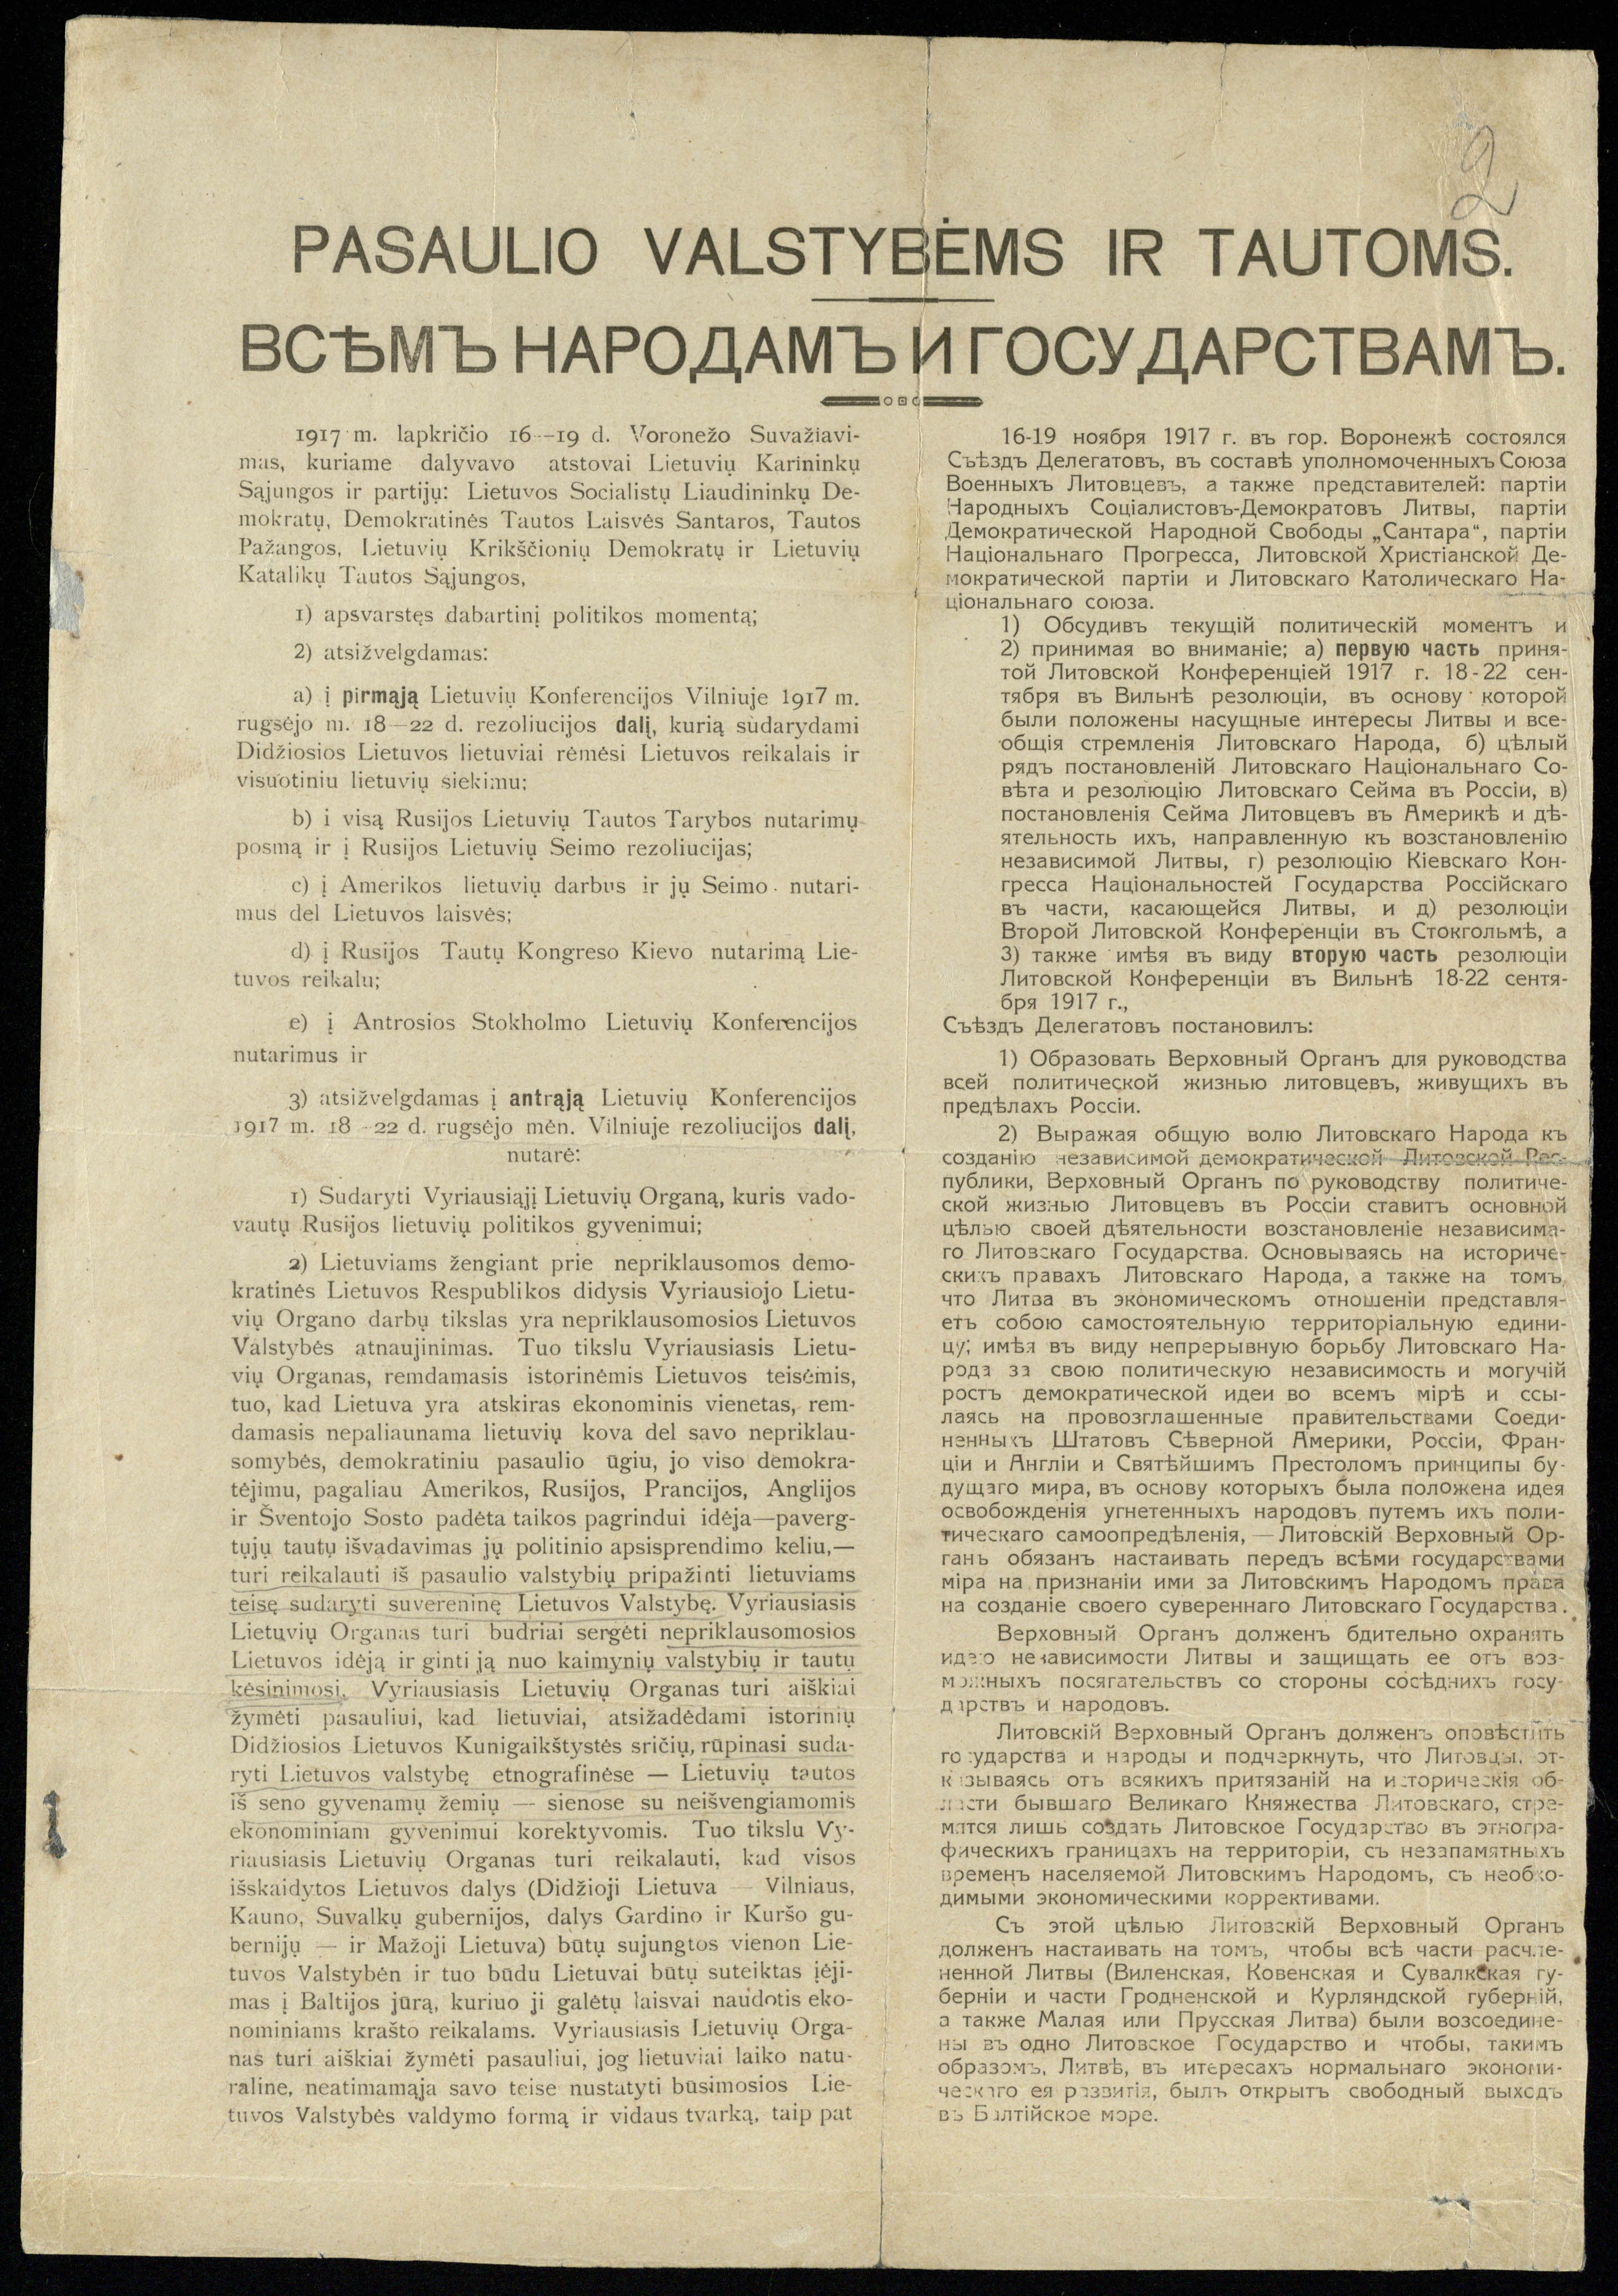 Lietuvių partijų ir organizacijų atstovų suvažiavimo, įvykusio 1917 m. lapkričio 16–19 d. Voroneže, kreipimasis į pasaulio valstybes ir tautas